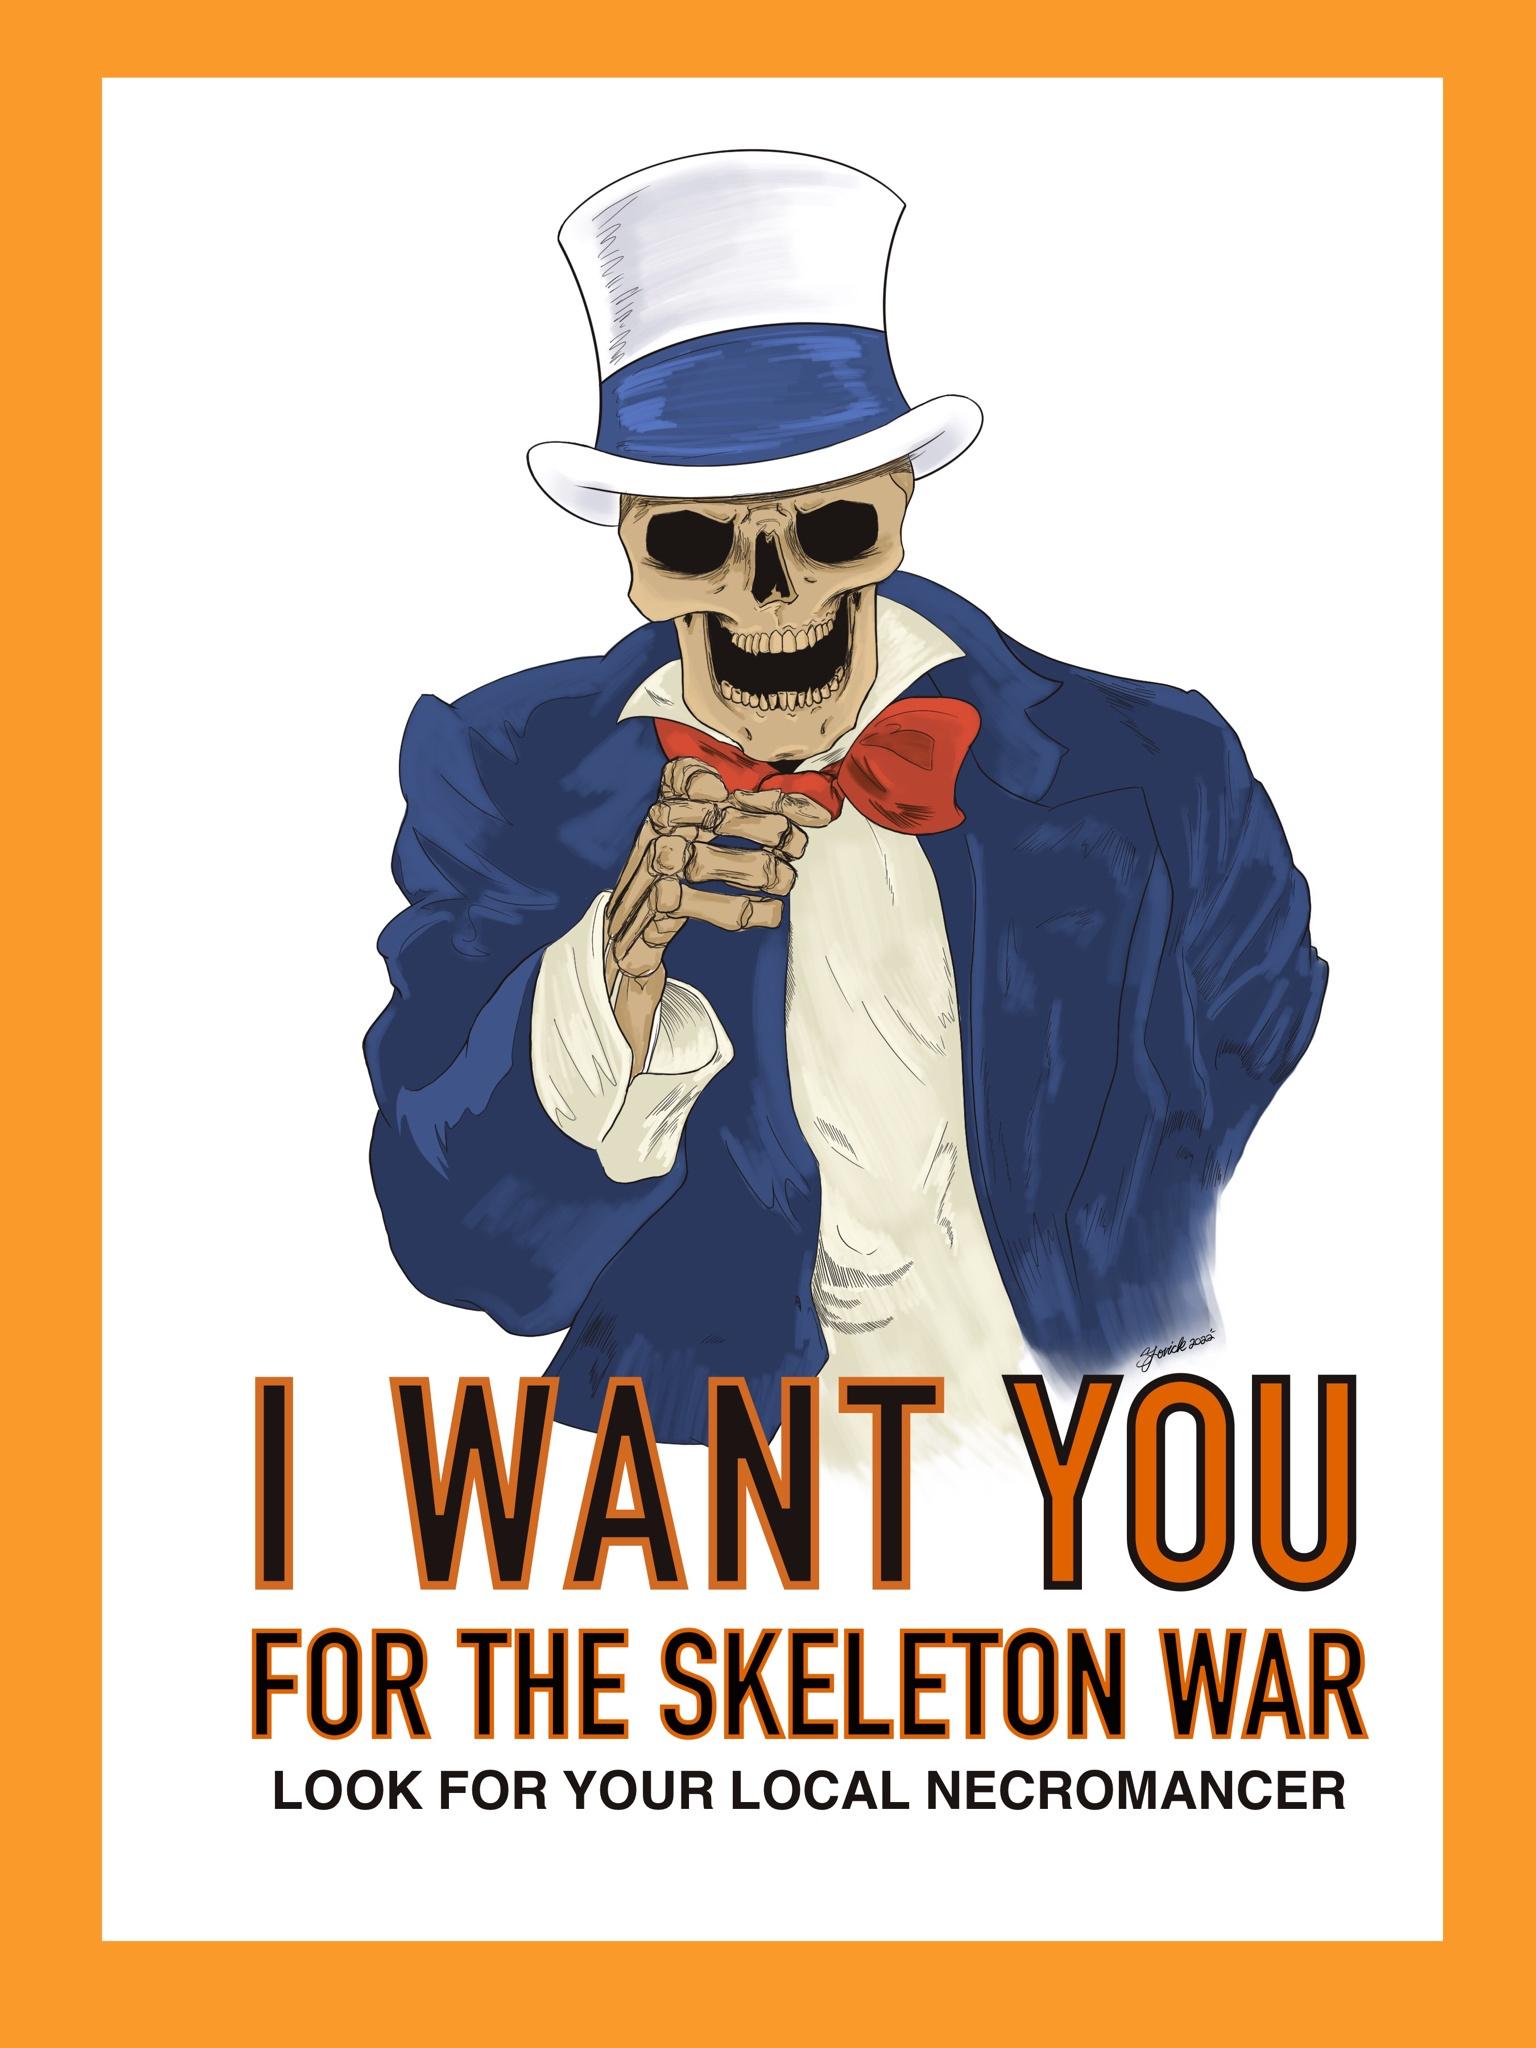 OC: Skeletons for the Skeleton War